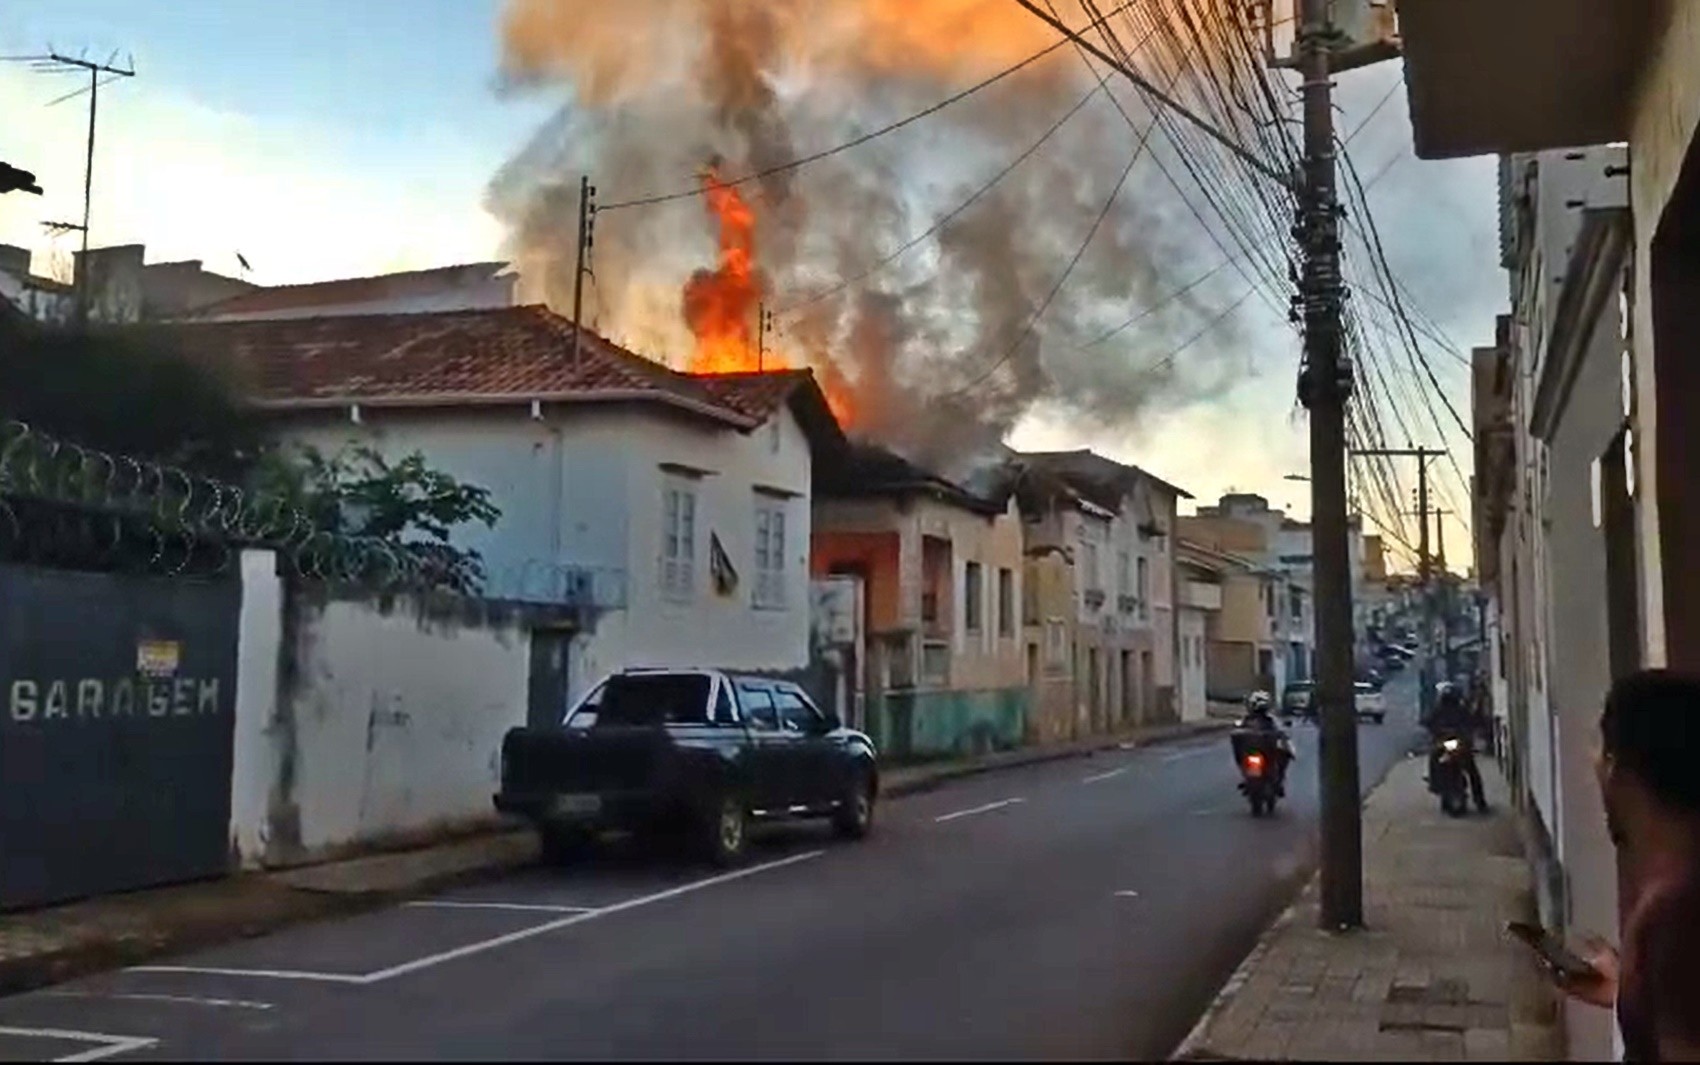 Casa ocupada por pessoas em situação de rua pega fogo no Centro de Varginha, MG